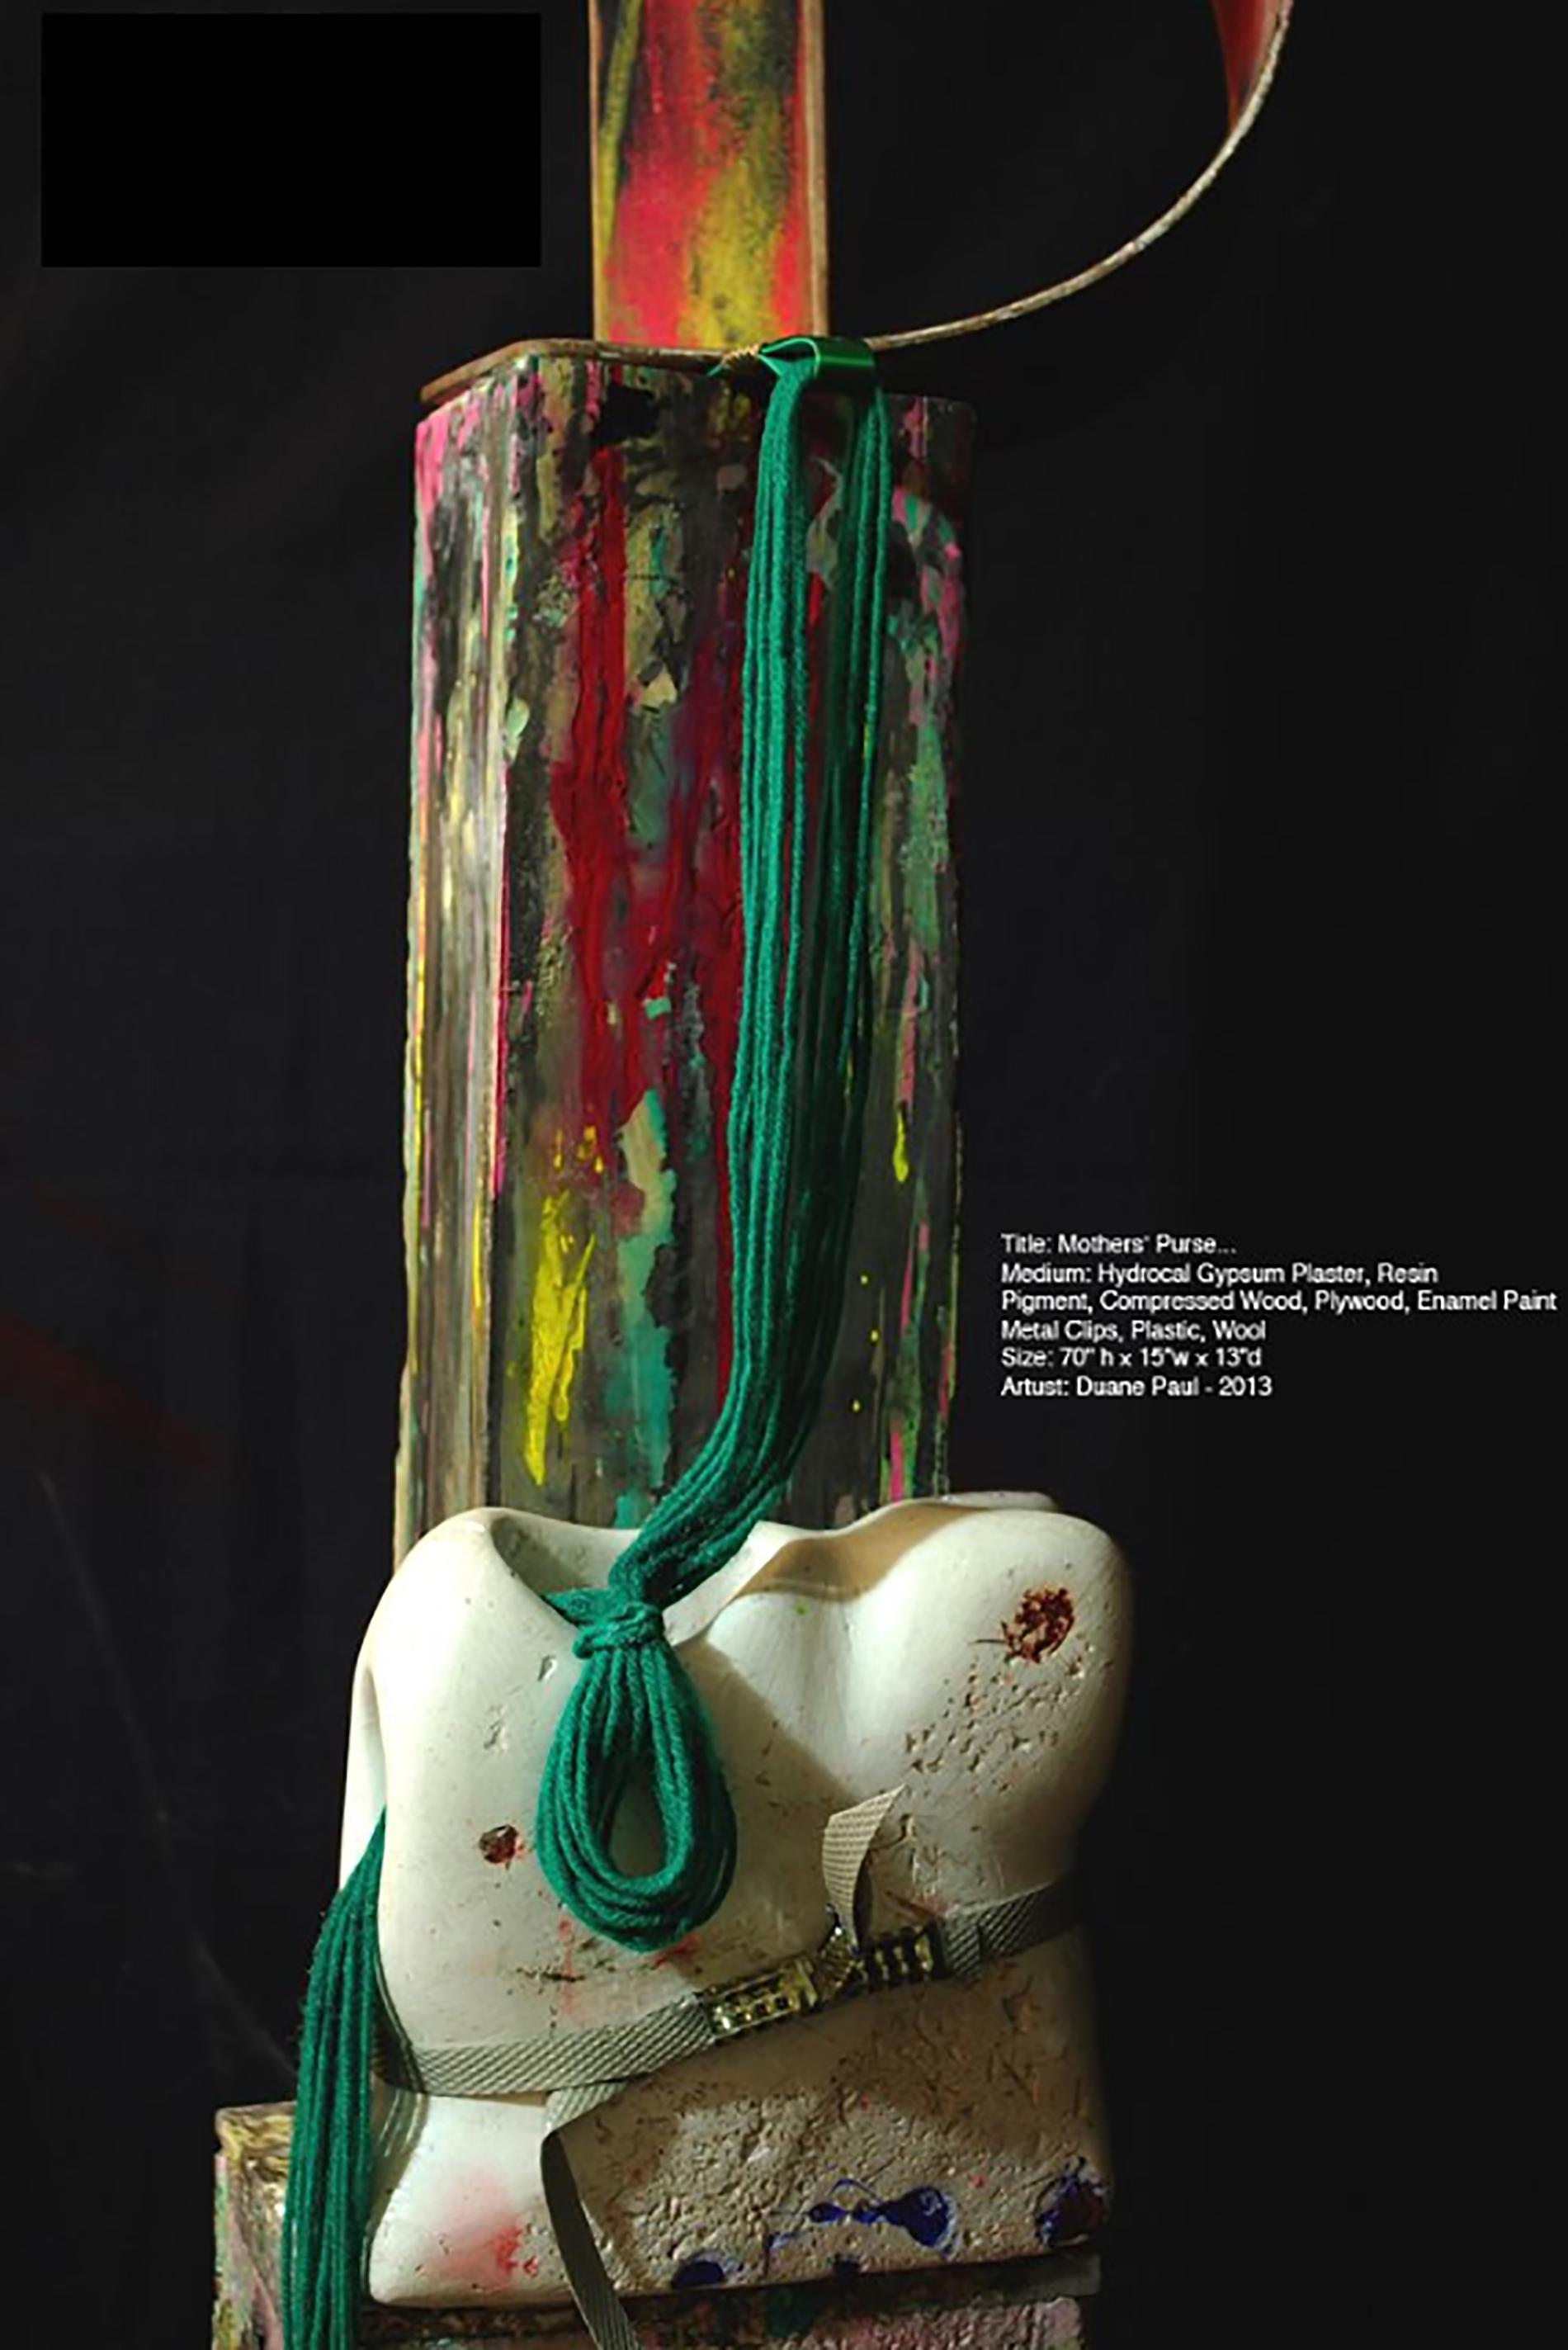 « Mother's Purse », sculpture en ciment, résine, plastique et bois - Sculpture de Duane Paul